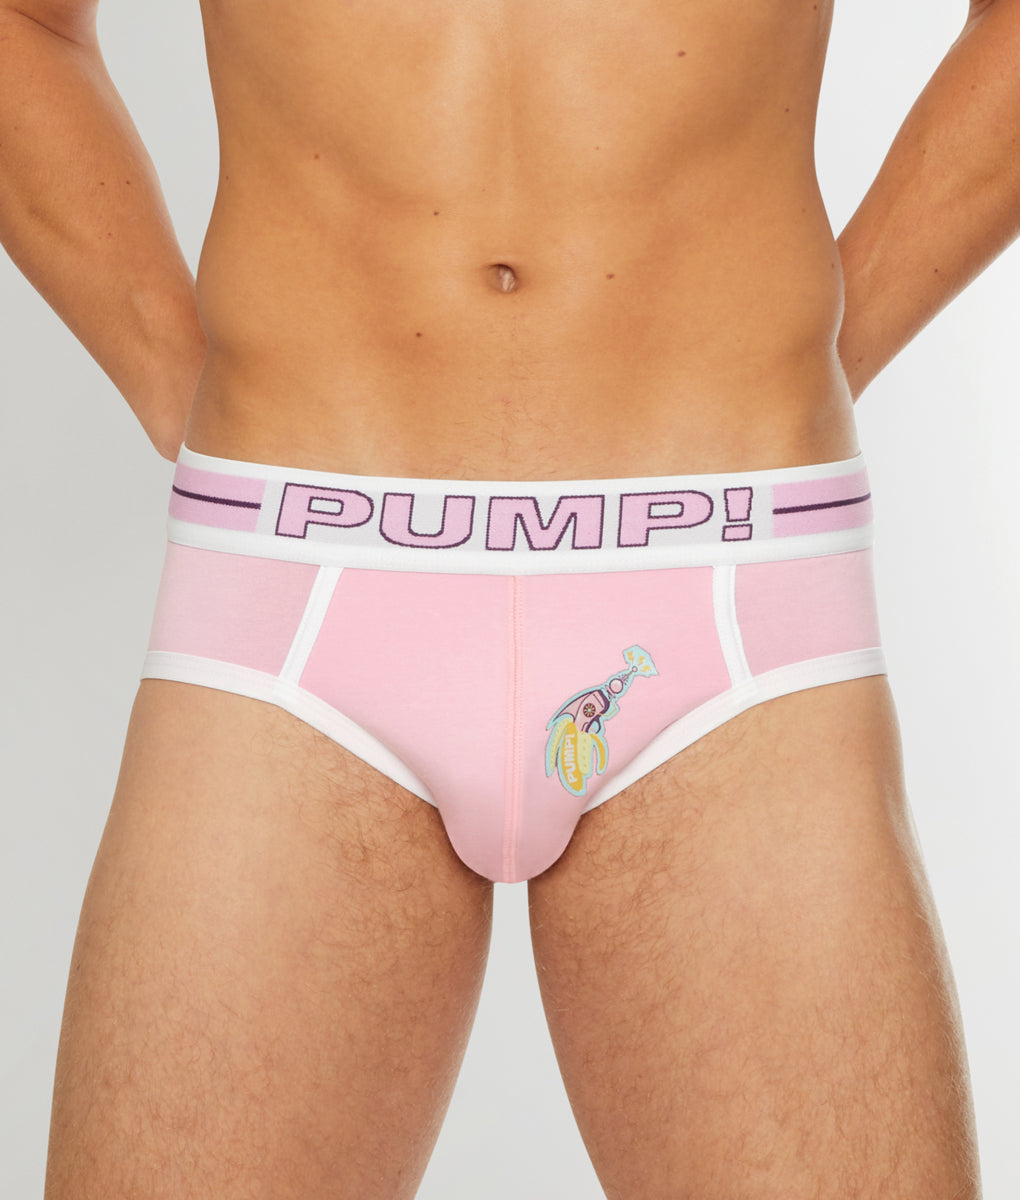 PUMP Underwear Emails, Sales & Deals - Page 1